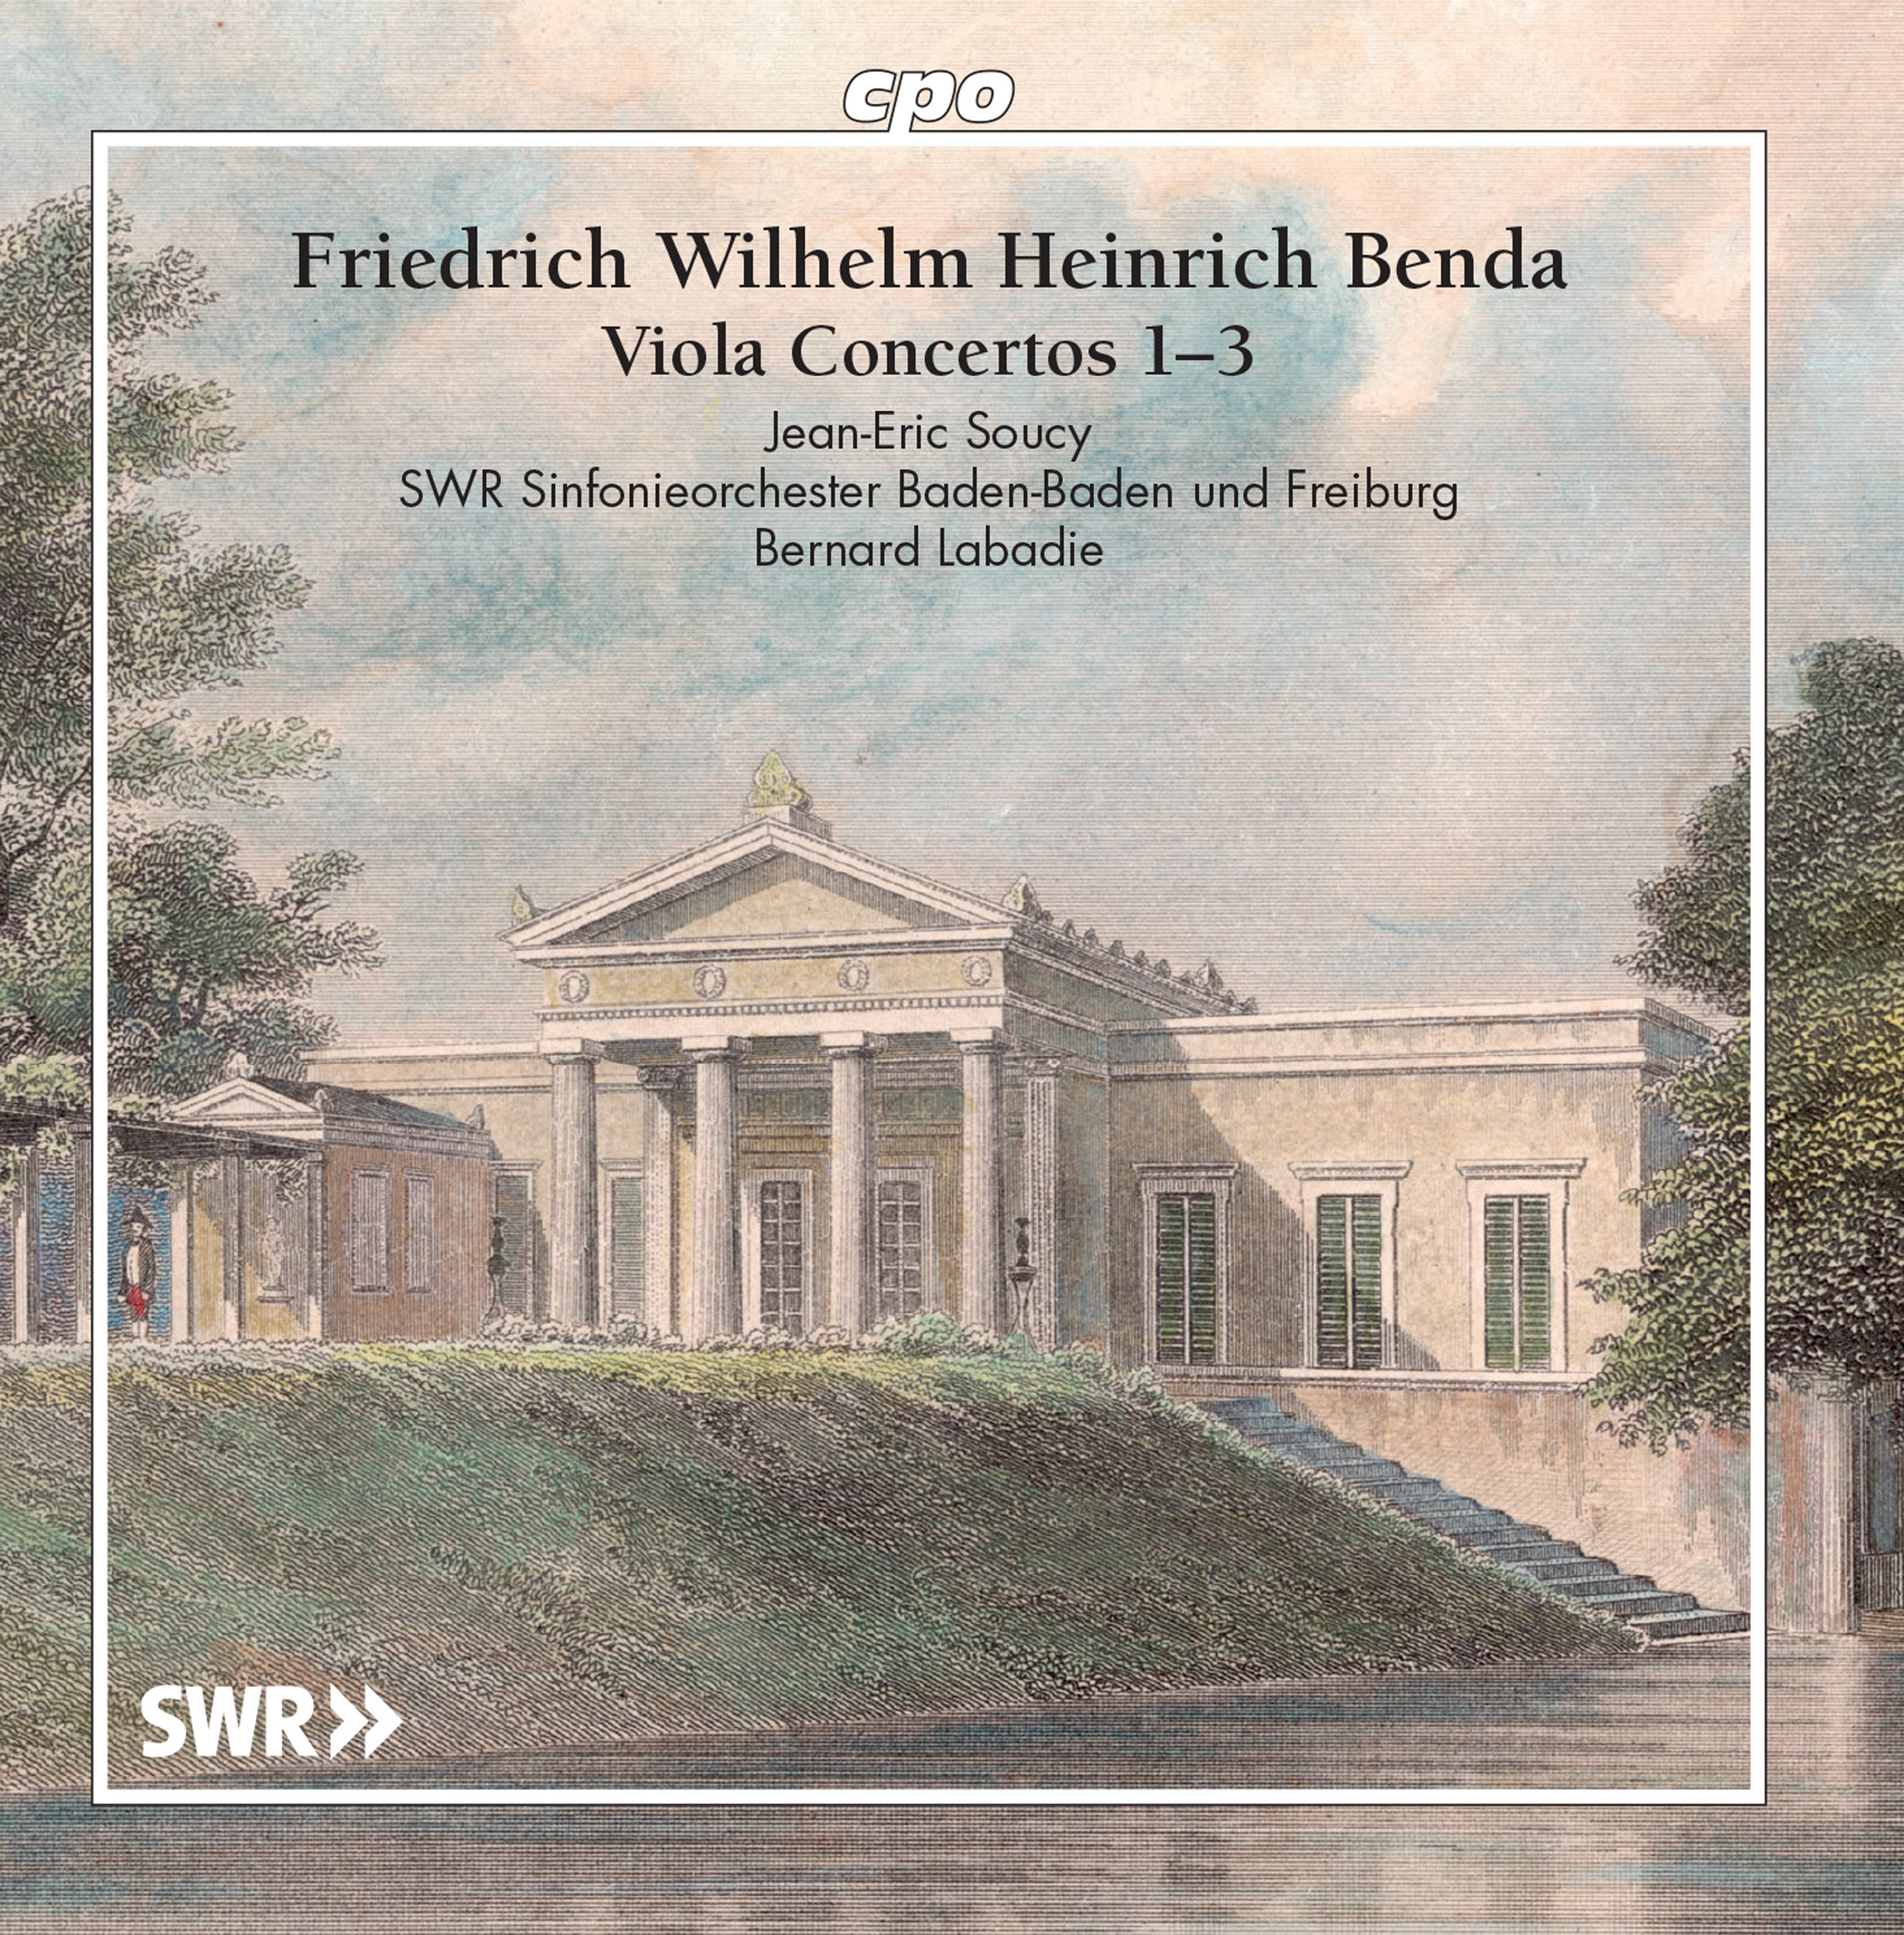 Viola Concerto No. 3 in E-Flat Major, LorB 316: II. Romance